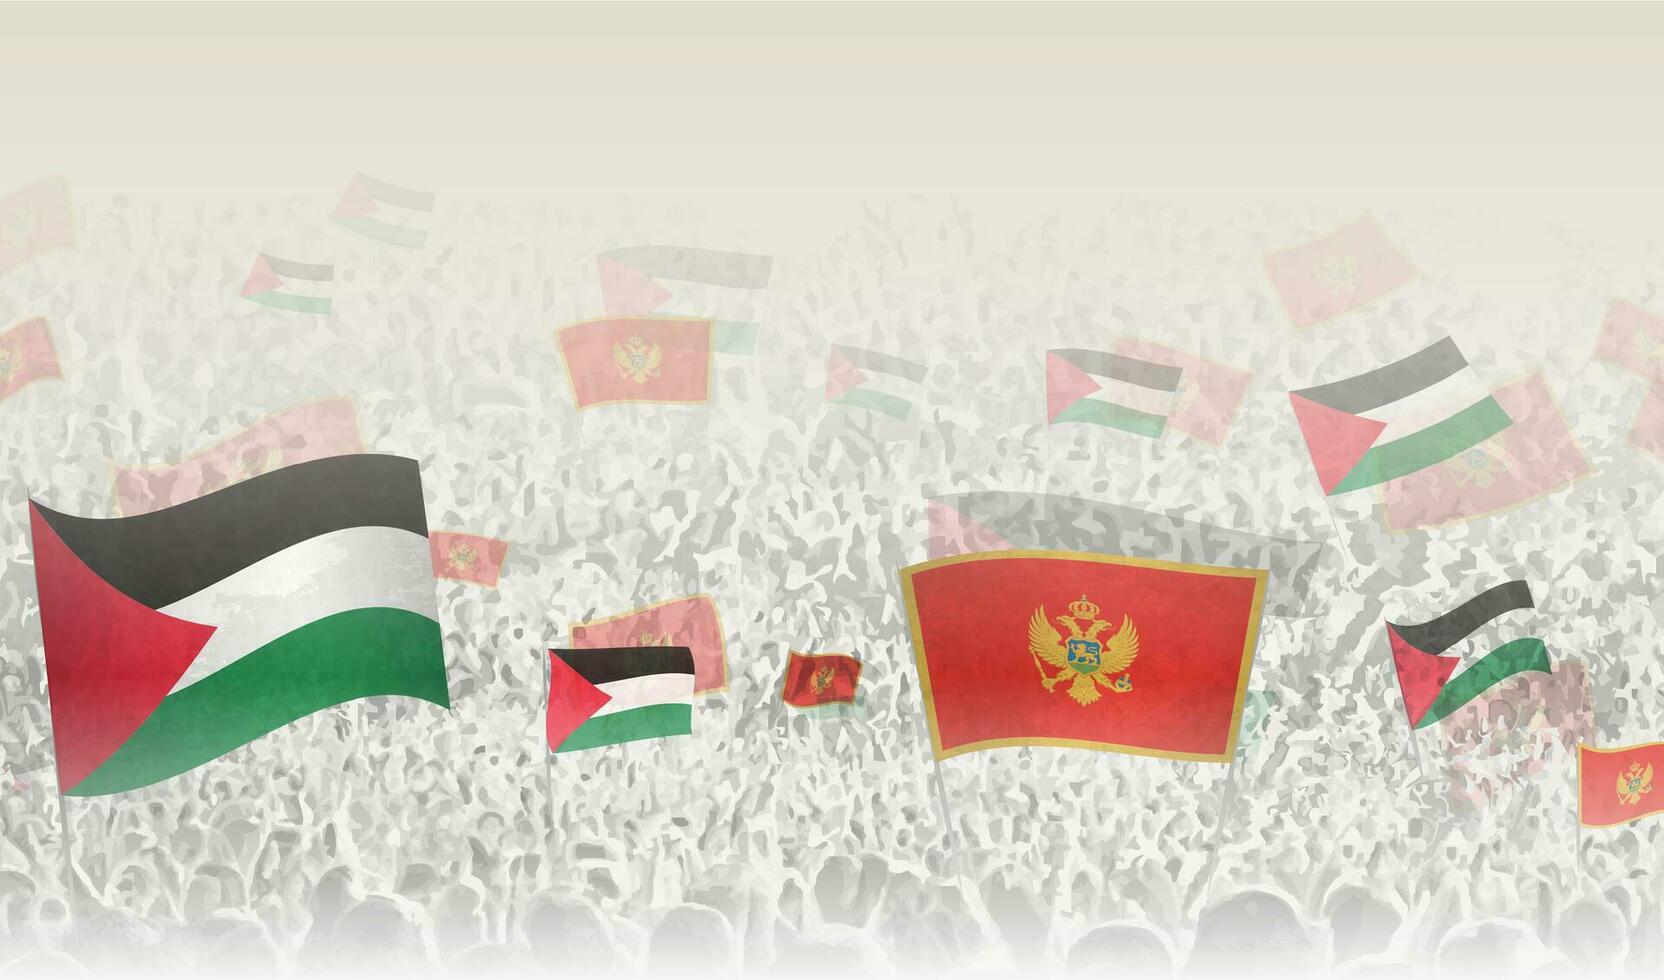 palestina och monte flaggor i en folkmassan av glädjande människor. vektor